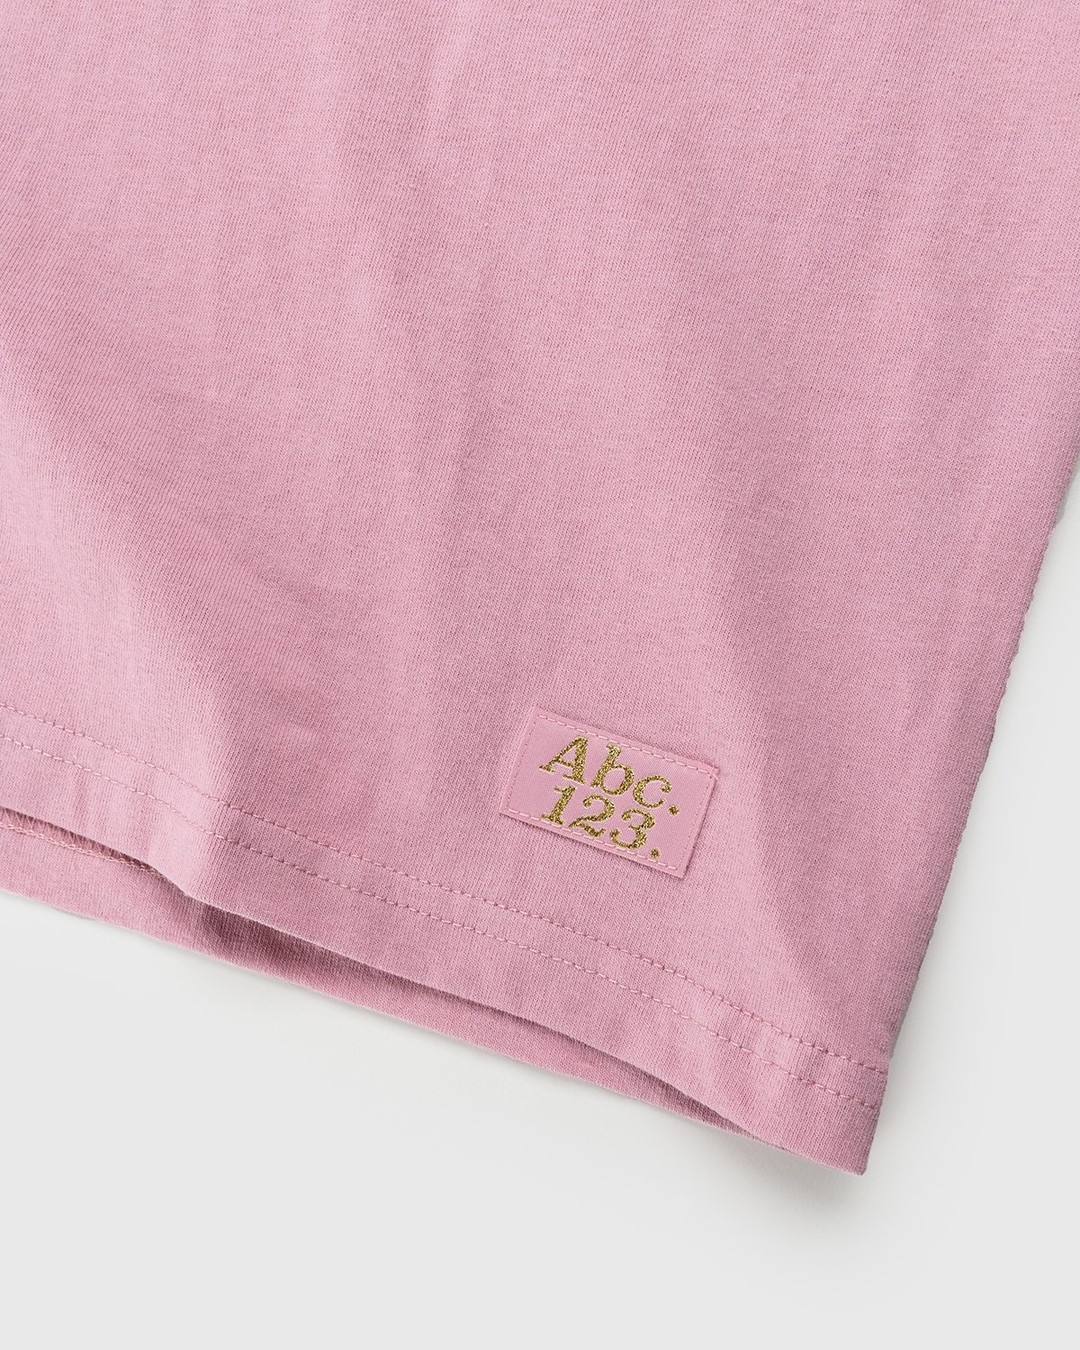 Abc. – Short-Sleeve Pocket Tee Morganite - T-shirts - Pink - Image 6